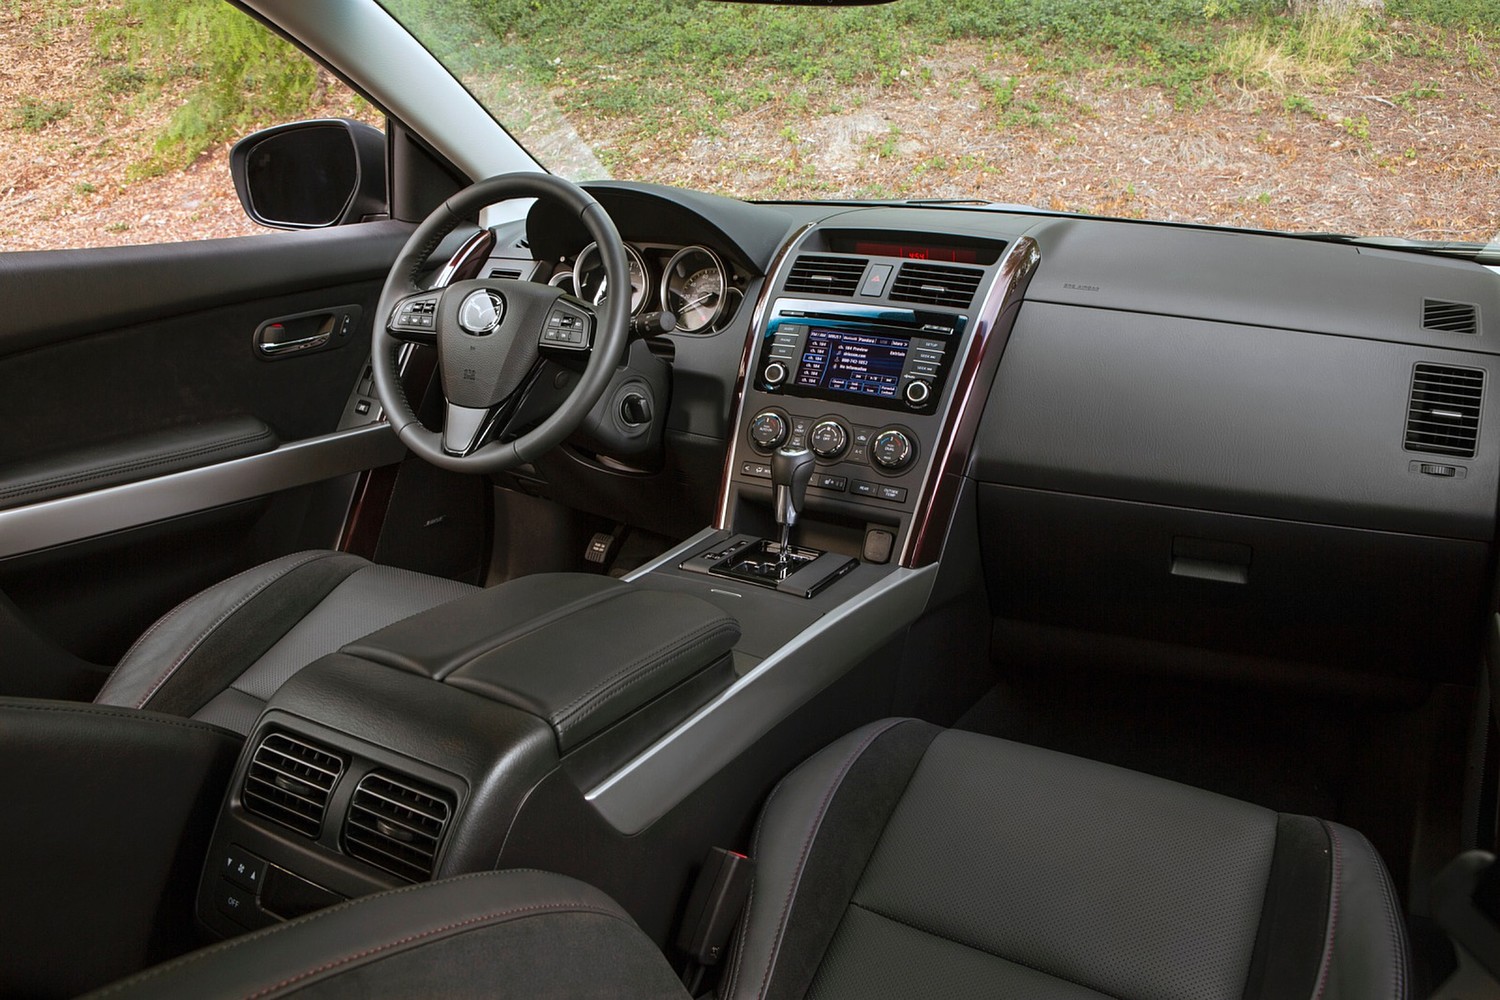 Mazda CX-9 Grand Touring 4dr SUV Interior (2013 model year shown)